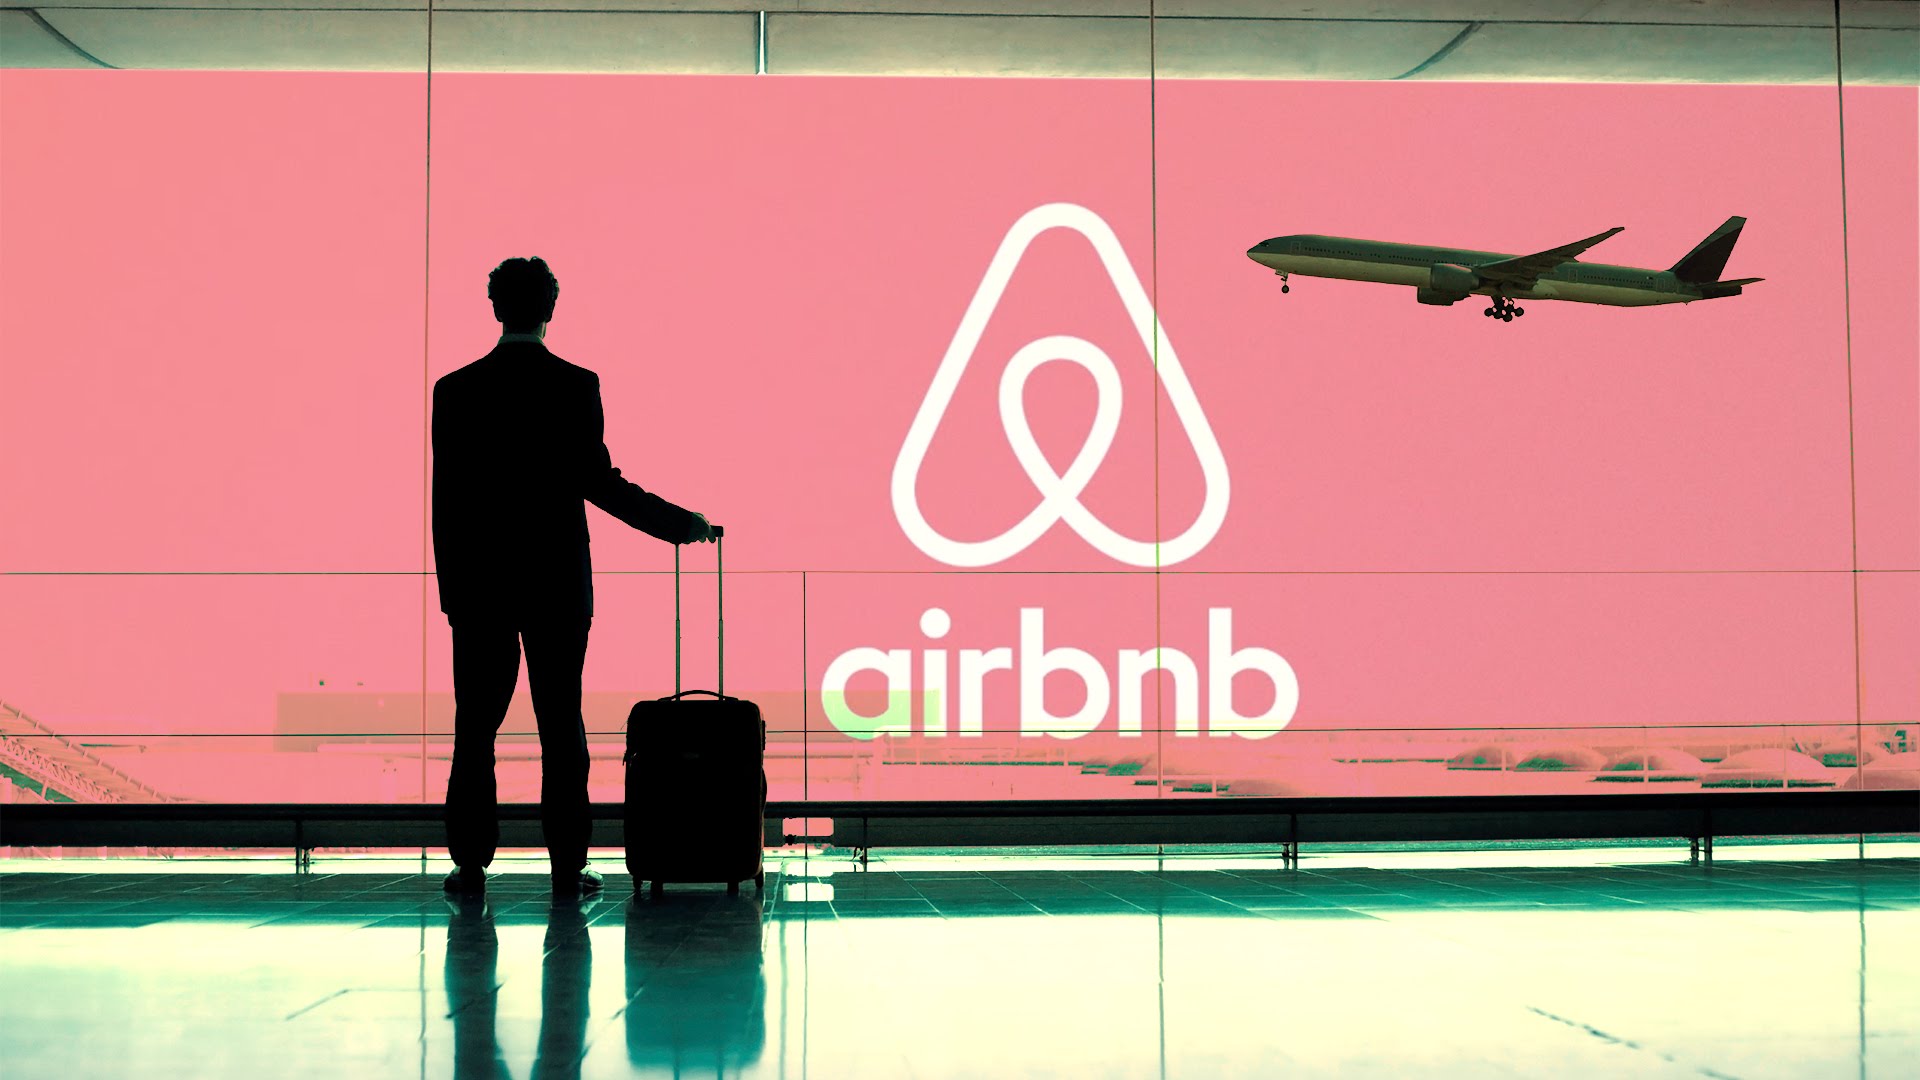 Airbnb成功運用互聯網的分享文化，令旅館房間這項商品產生額外價值。(網絡圖片)